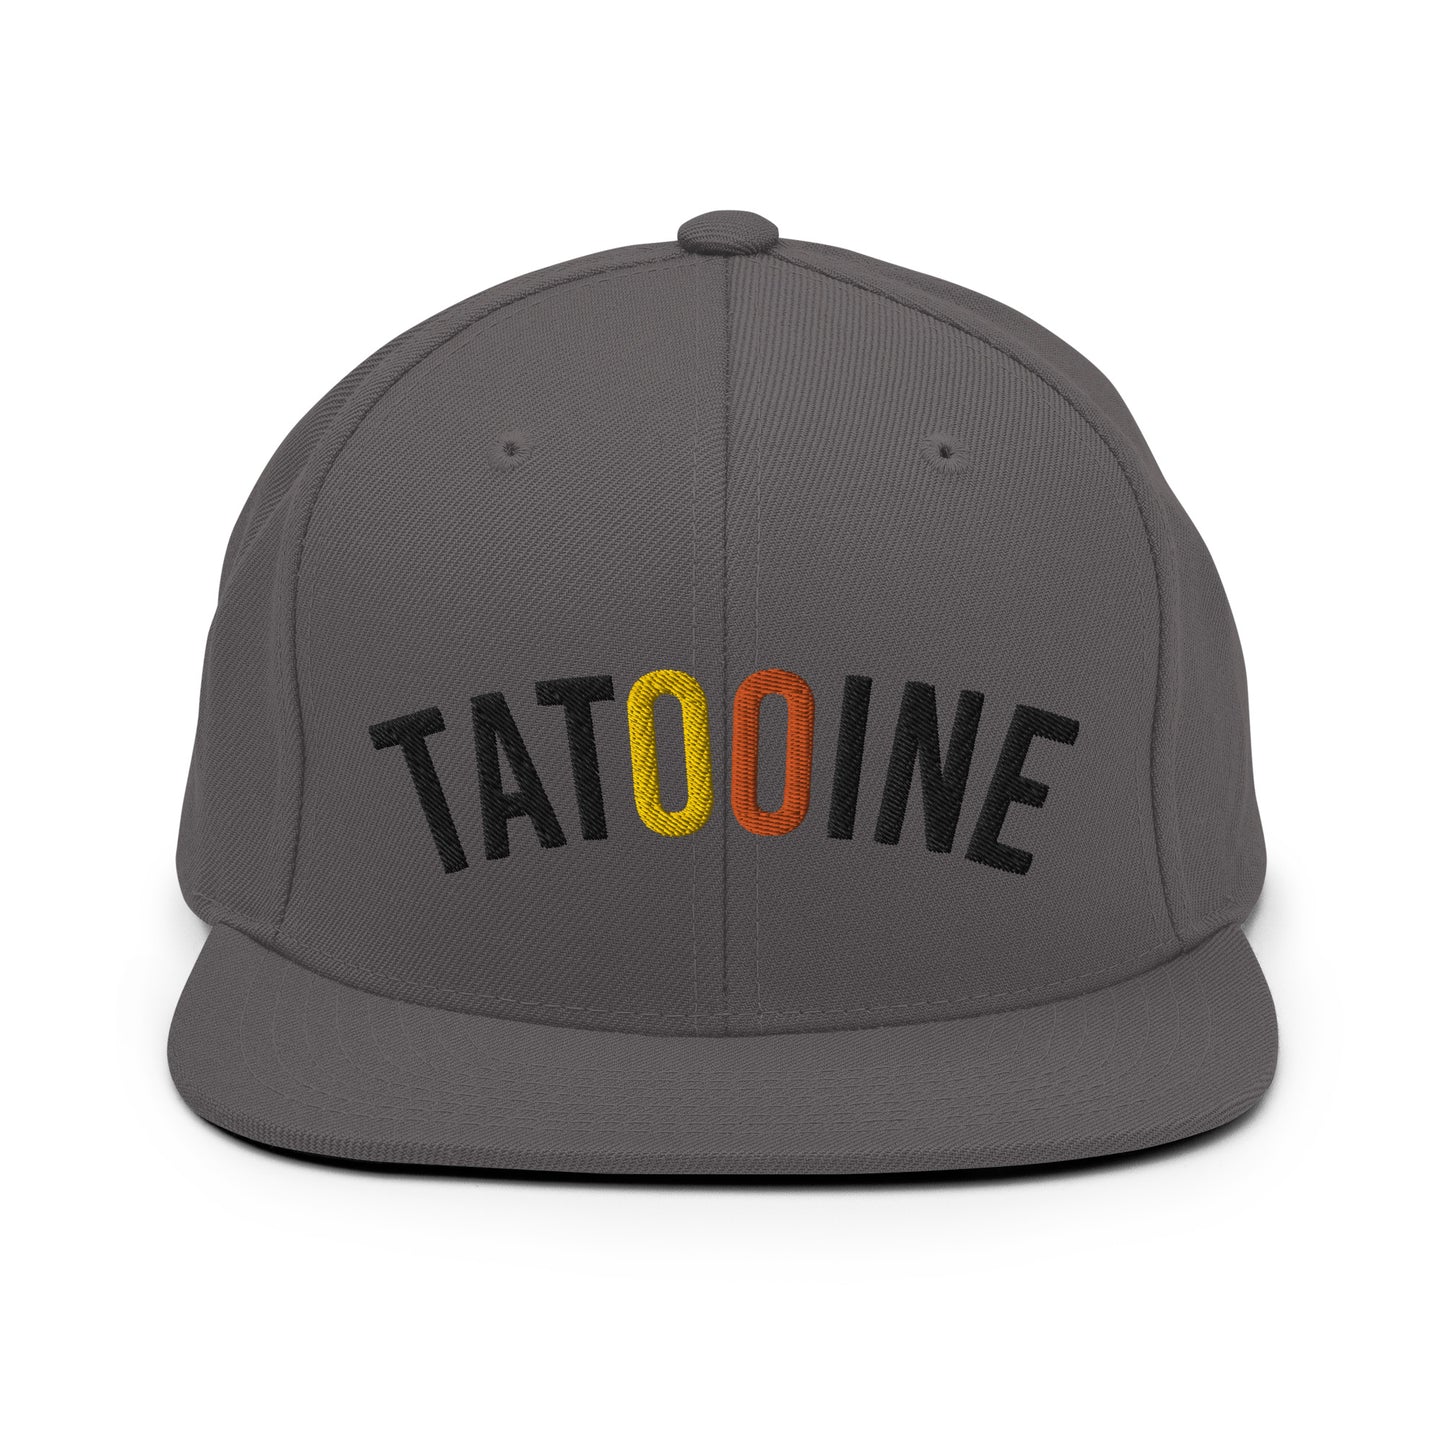 Tatooine Home Team snapback hat